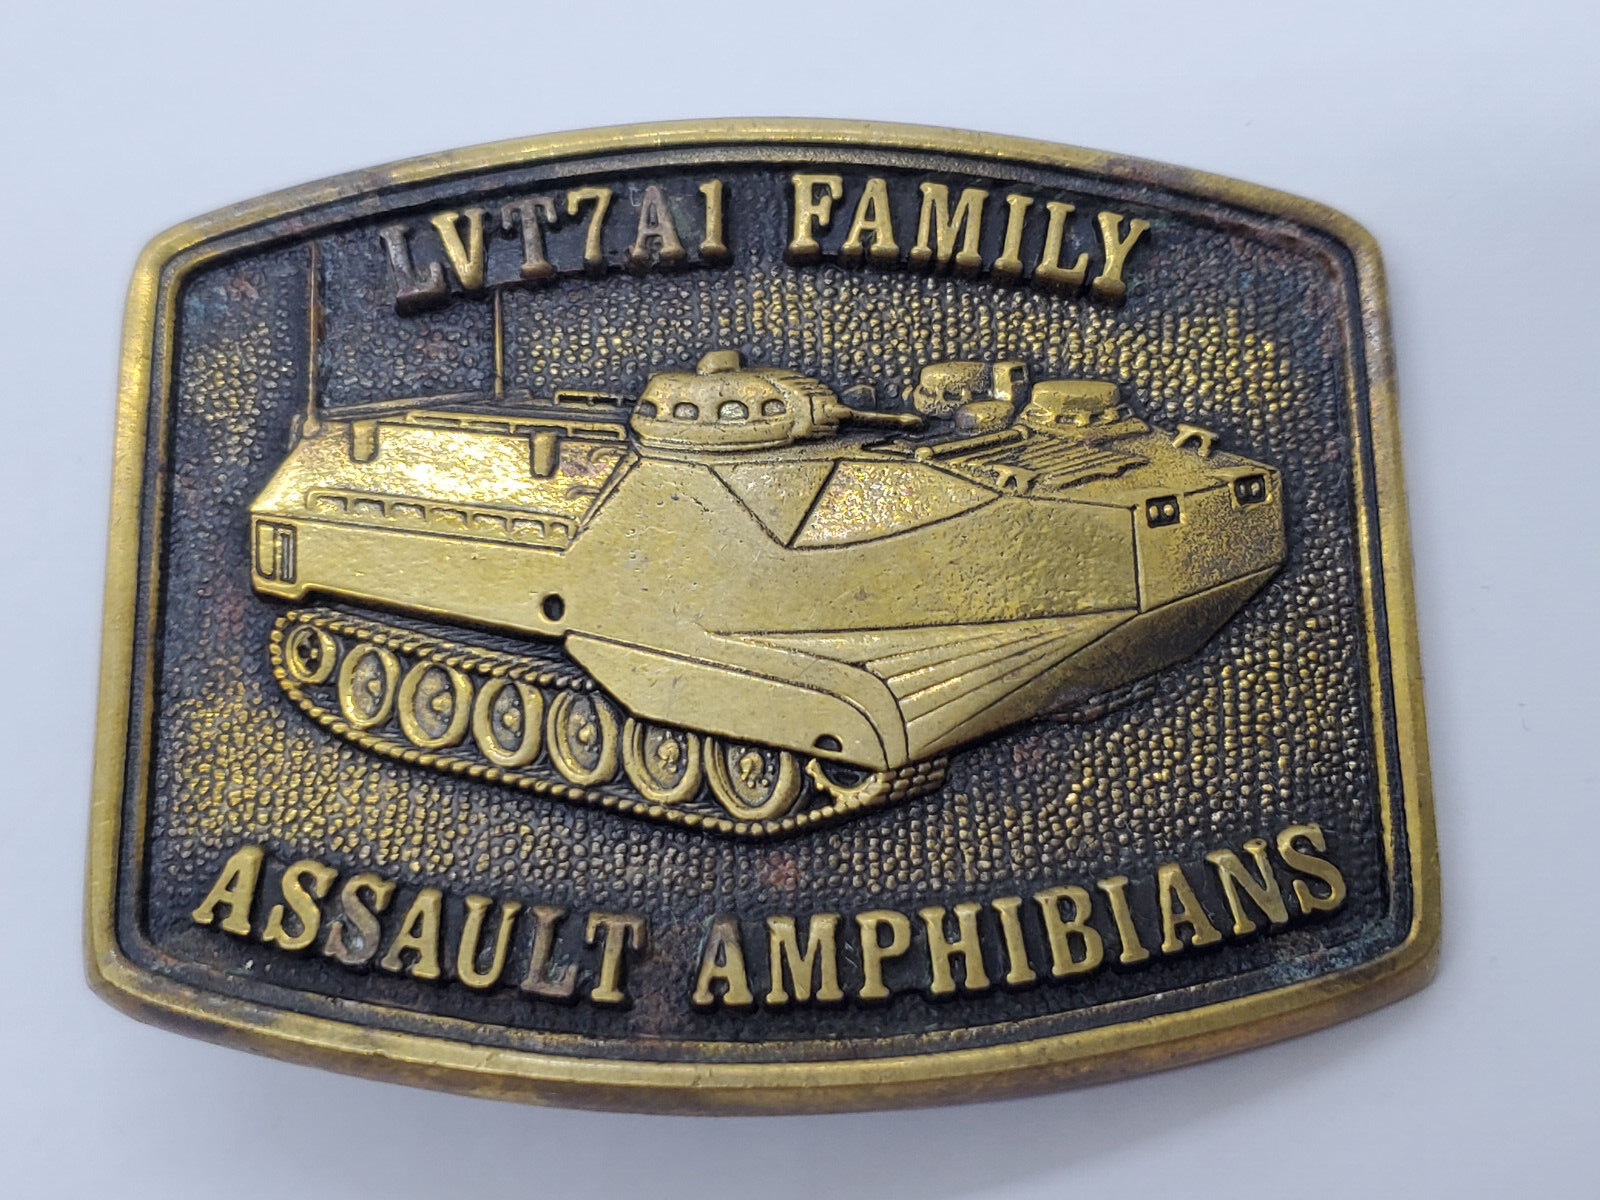 BTS Brand LVT7A1 Family Assault Amphibians Brass Belt Buckle - Missing Belt Bar